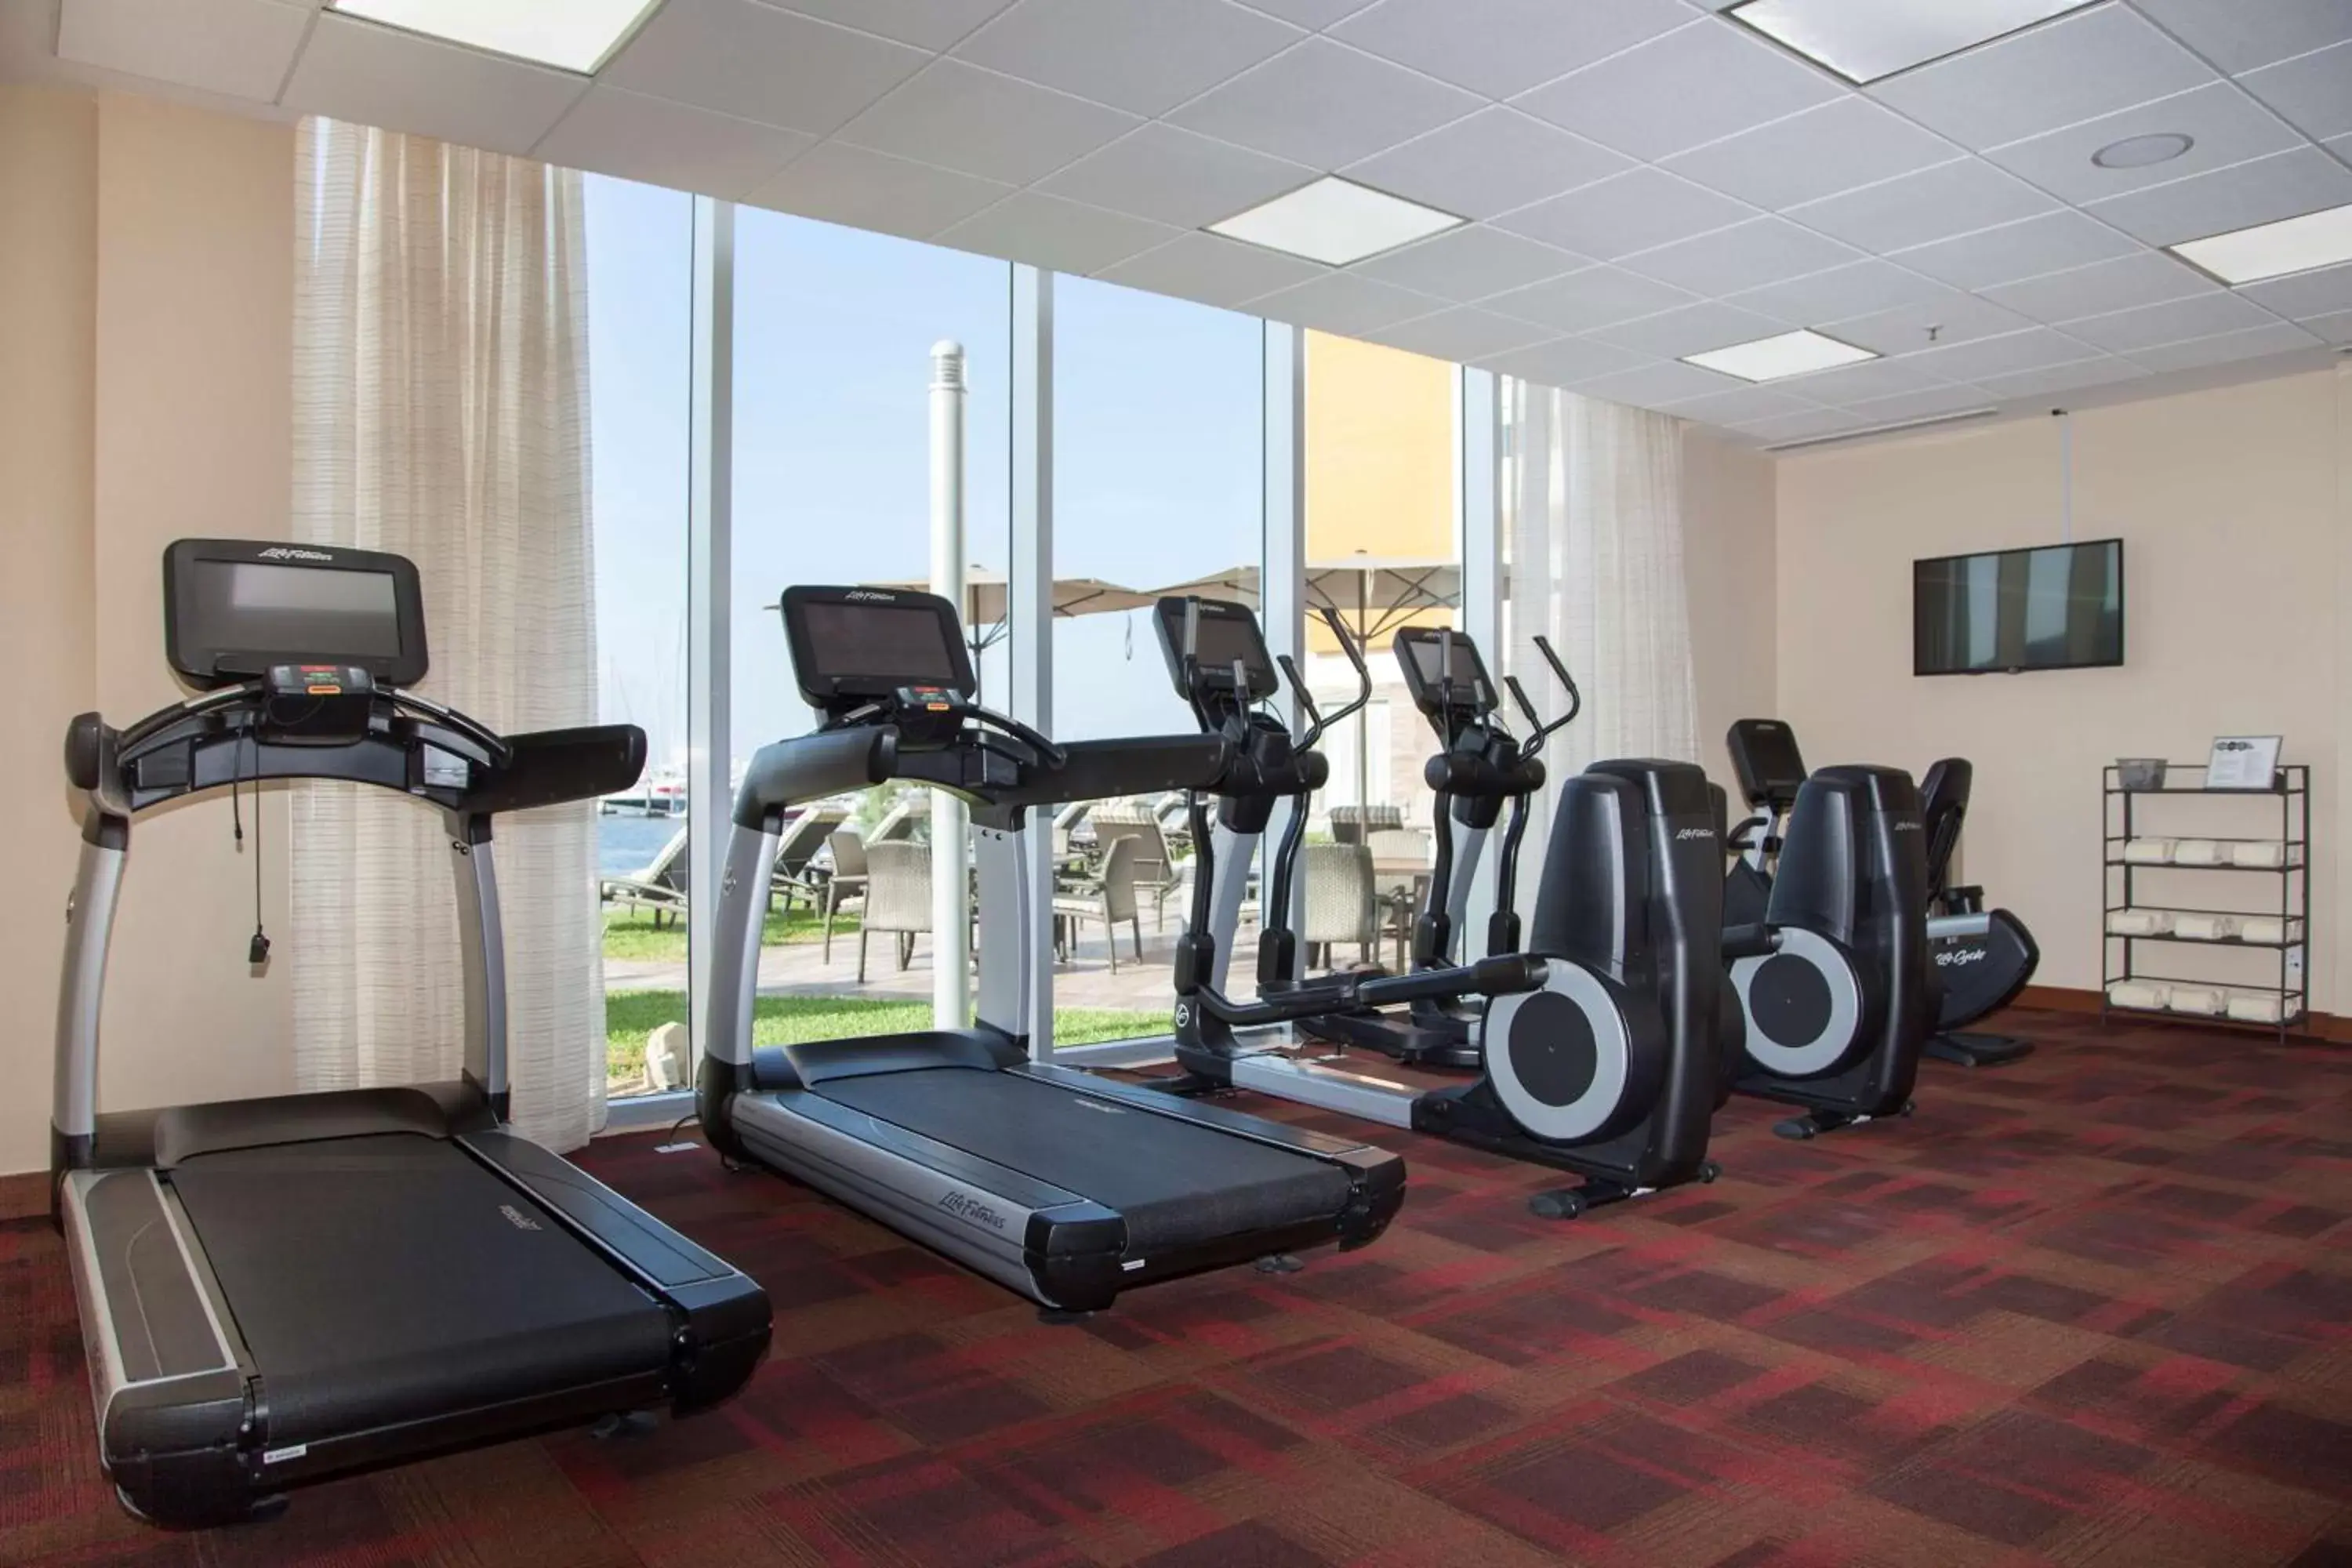 Fitness centre/facilities, Fitness Center/Facilities in Hyatt Place La Paz